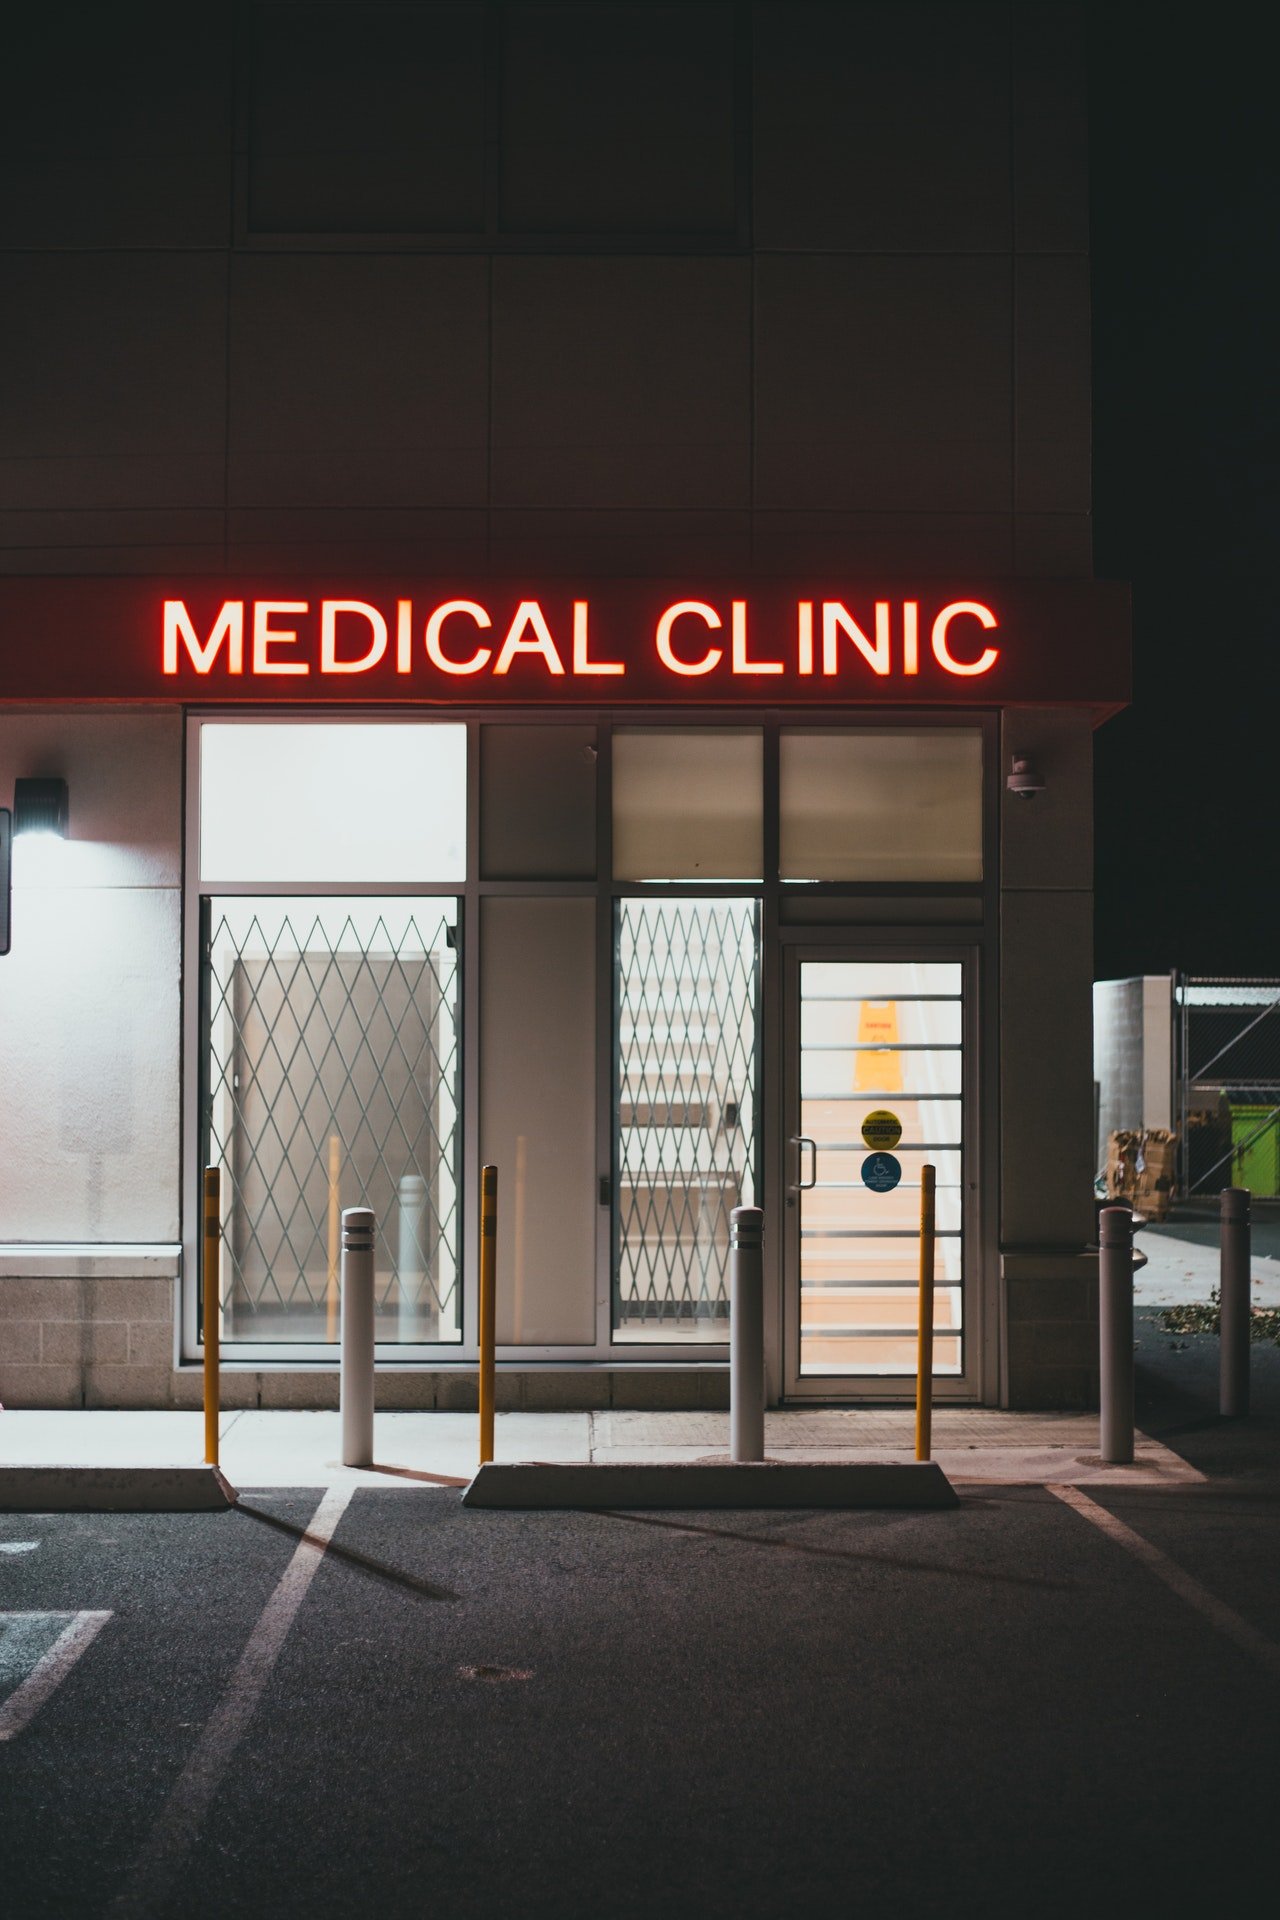 Enseigne de clinique médicale | Source : Pexels